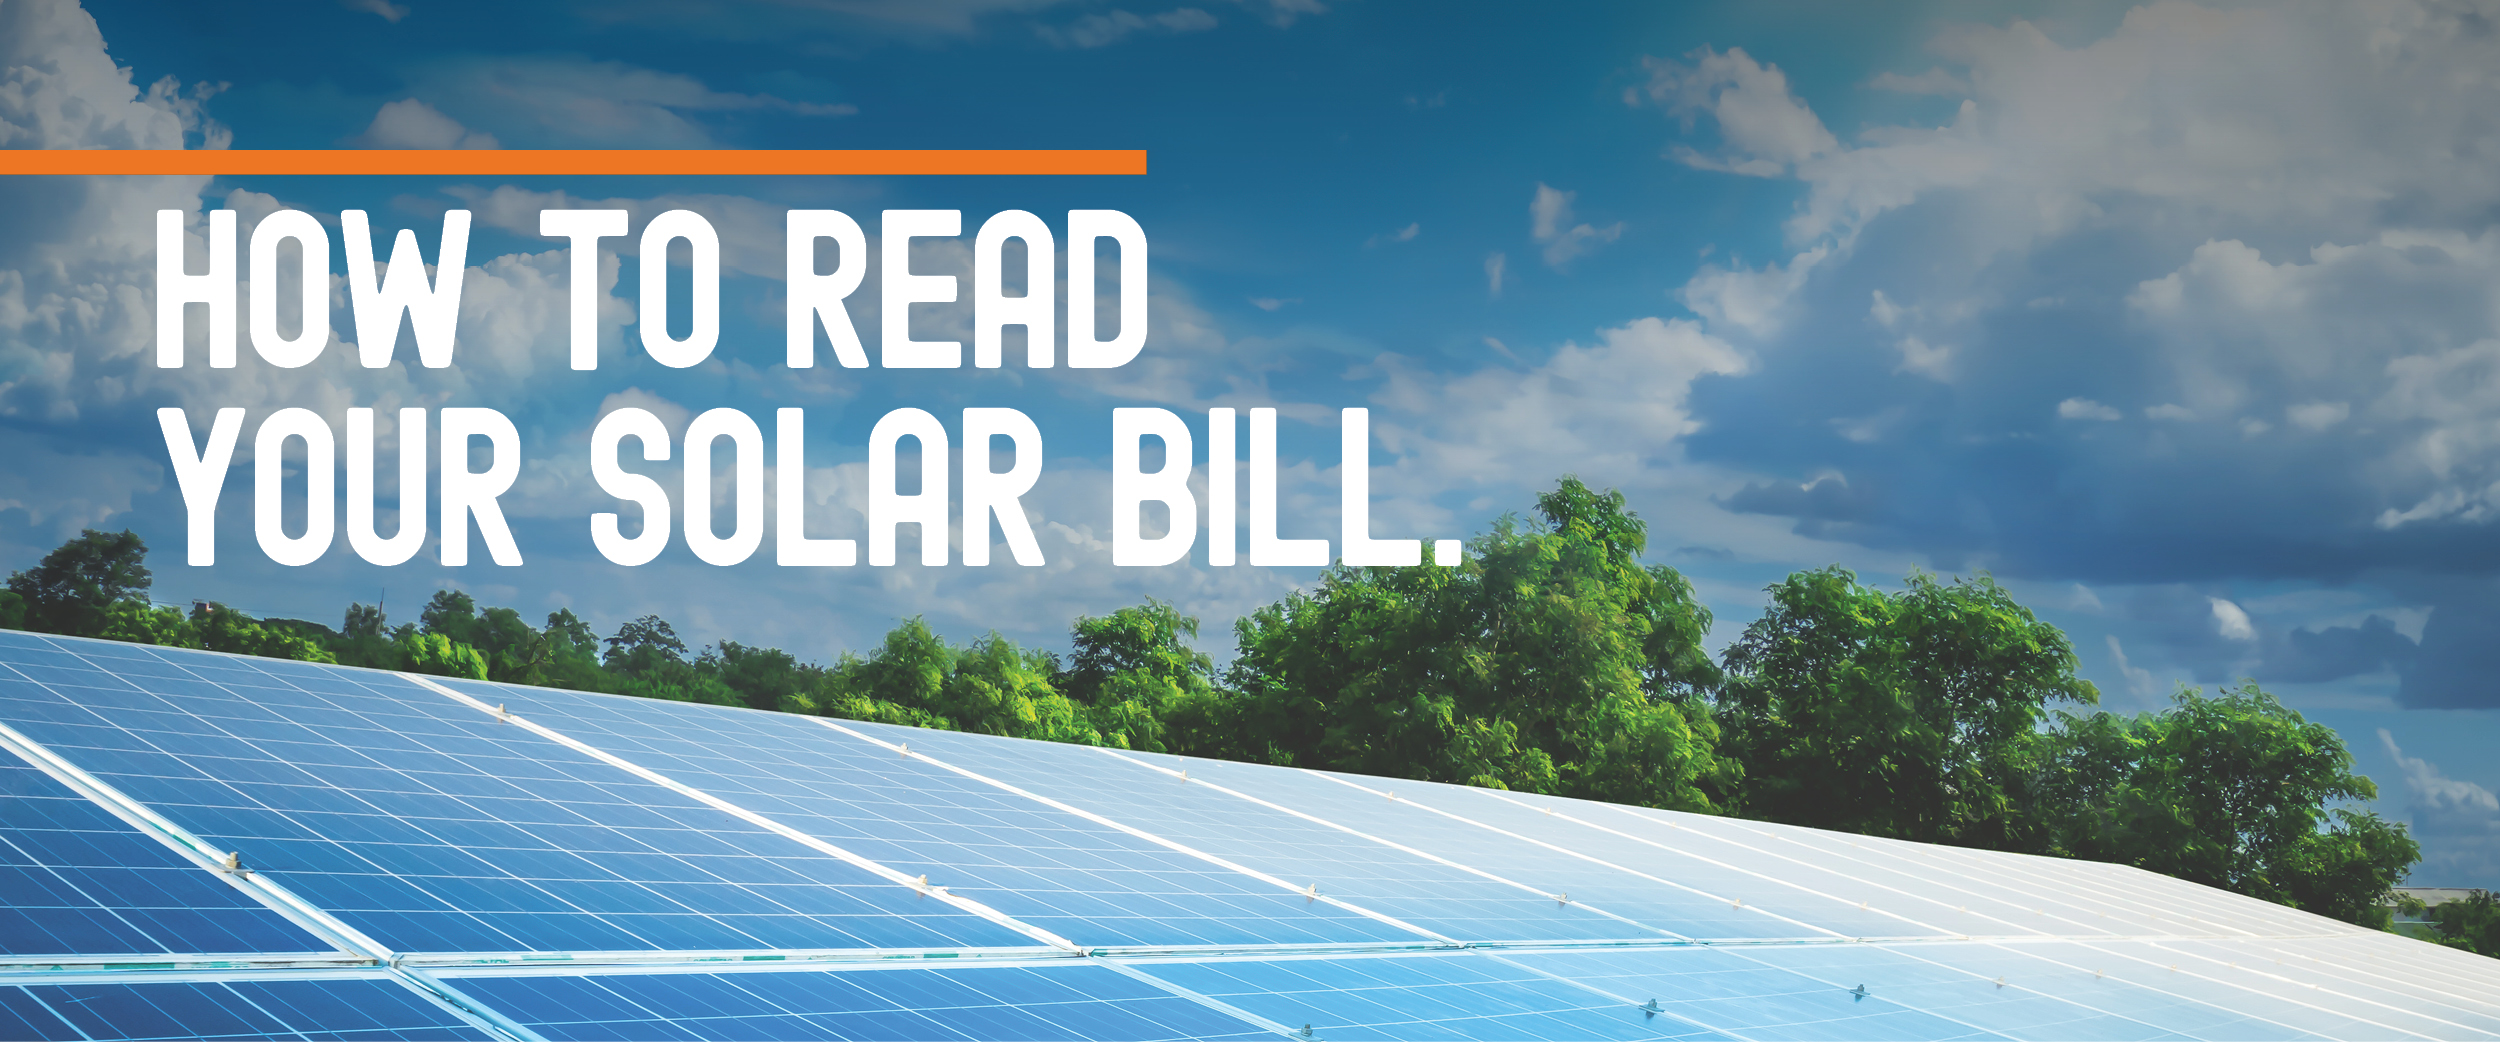 Black Hills Energy Solar Rebate Program